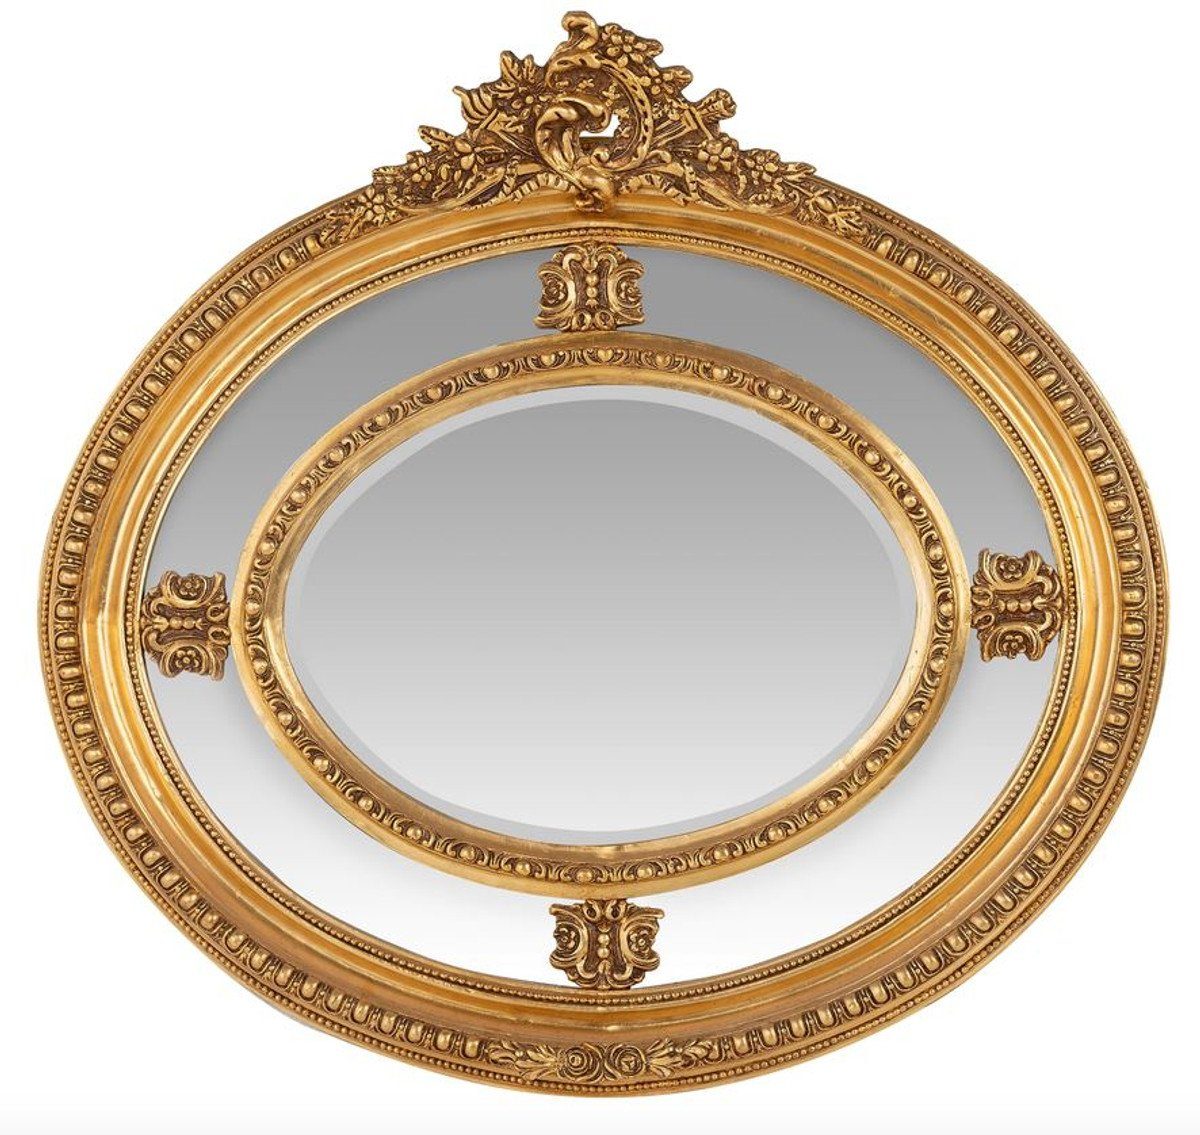 Casa Padrino Barockspiegel Luxus Barock Wandspiegel Oval Gold 120 cm - Massiv und Schwer - Goldener Spiegel